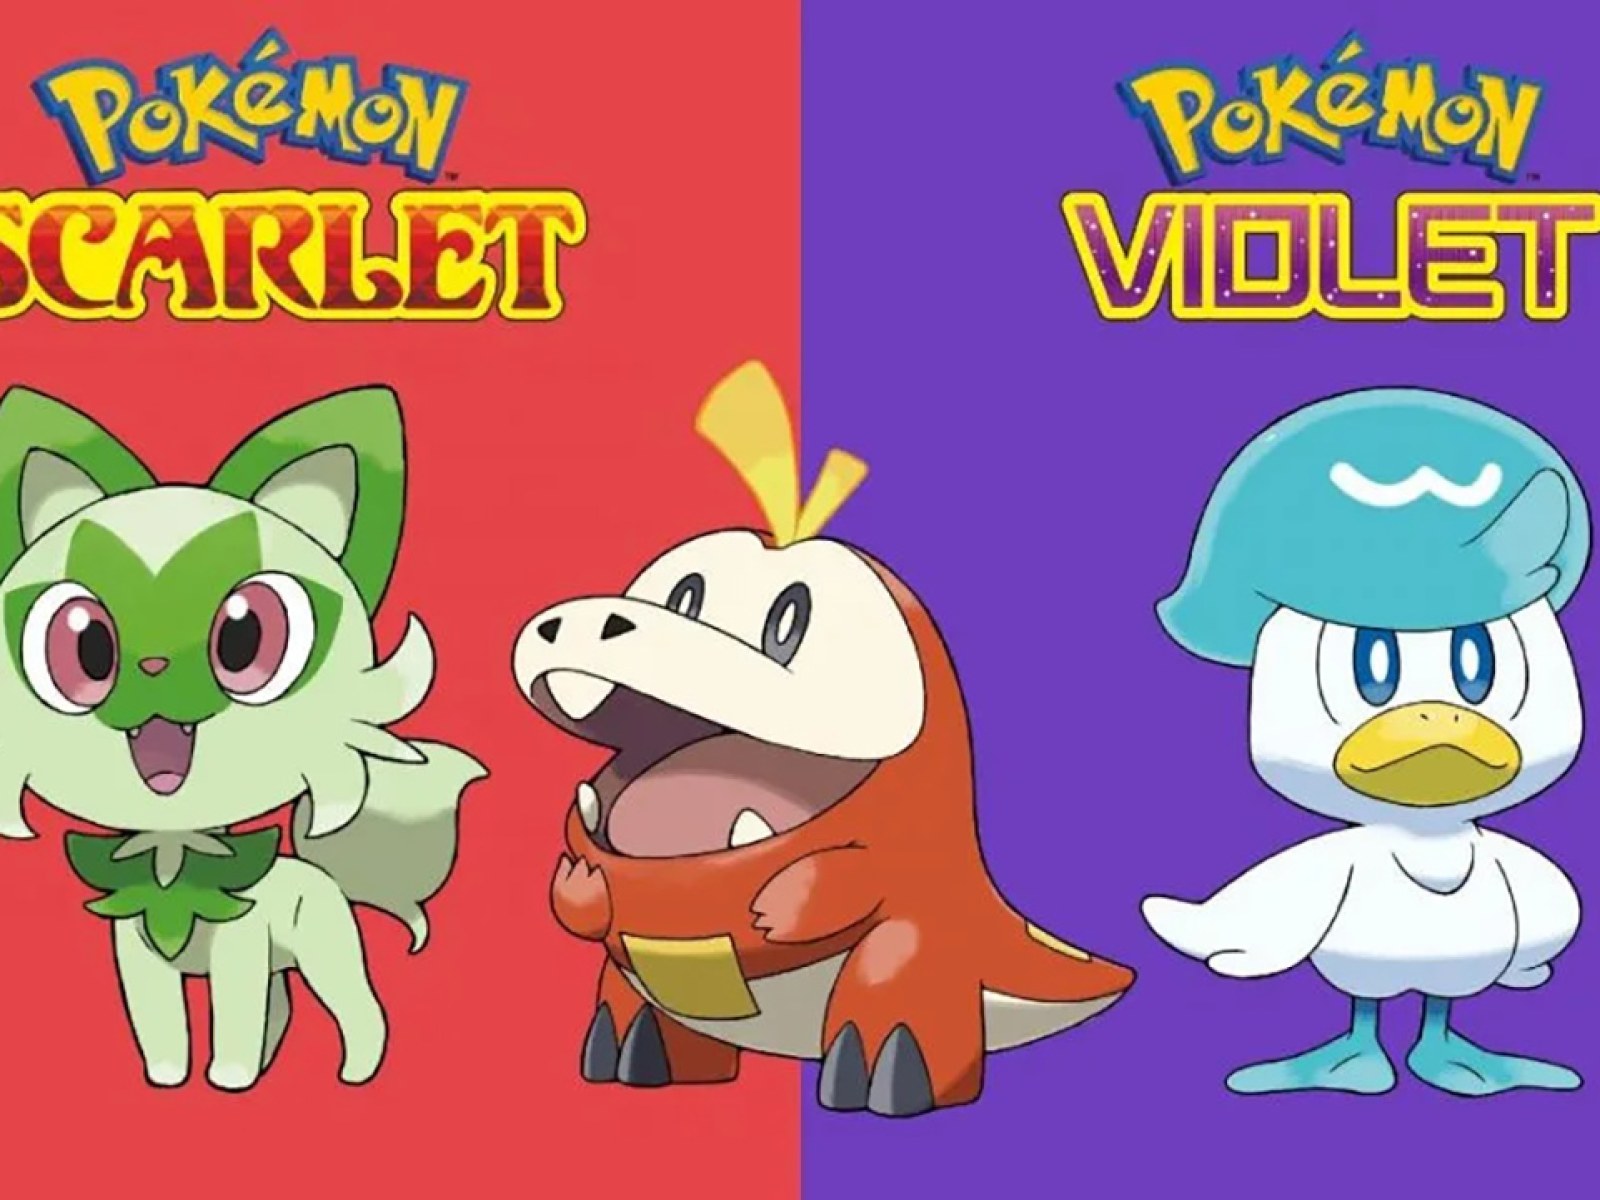 Pokémon Scarlet and Violet: Evolution of all Starter Pokémon